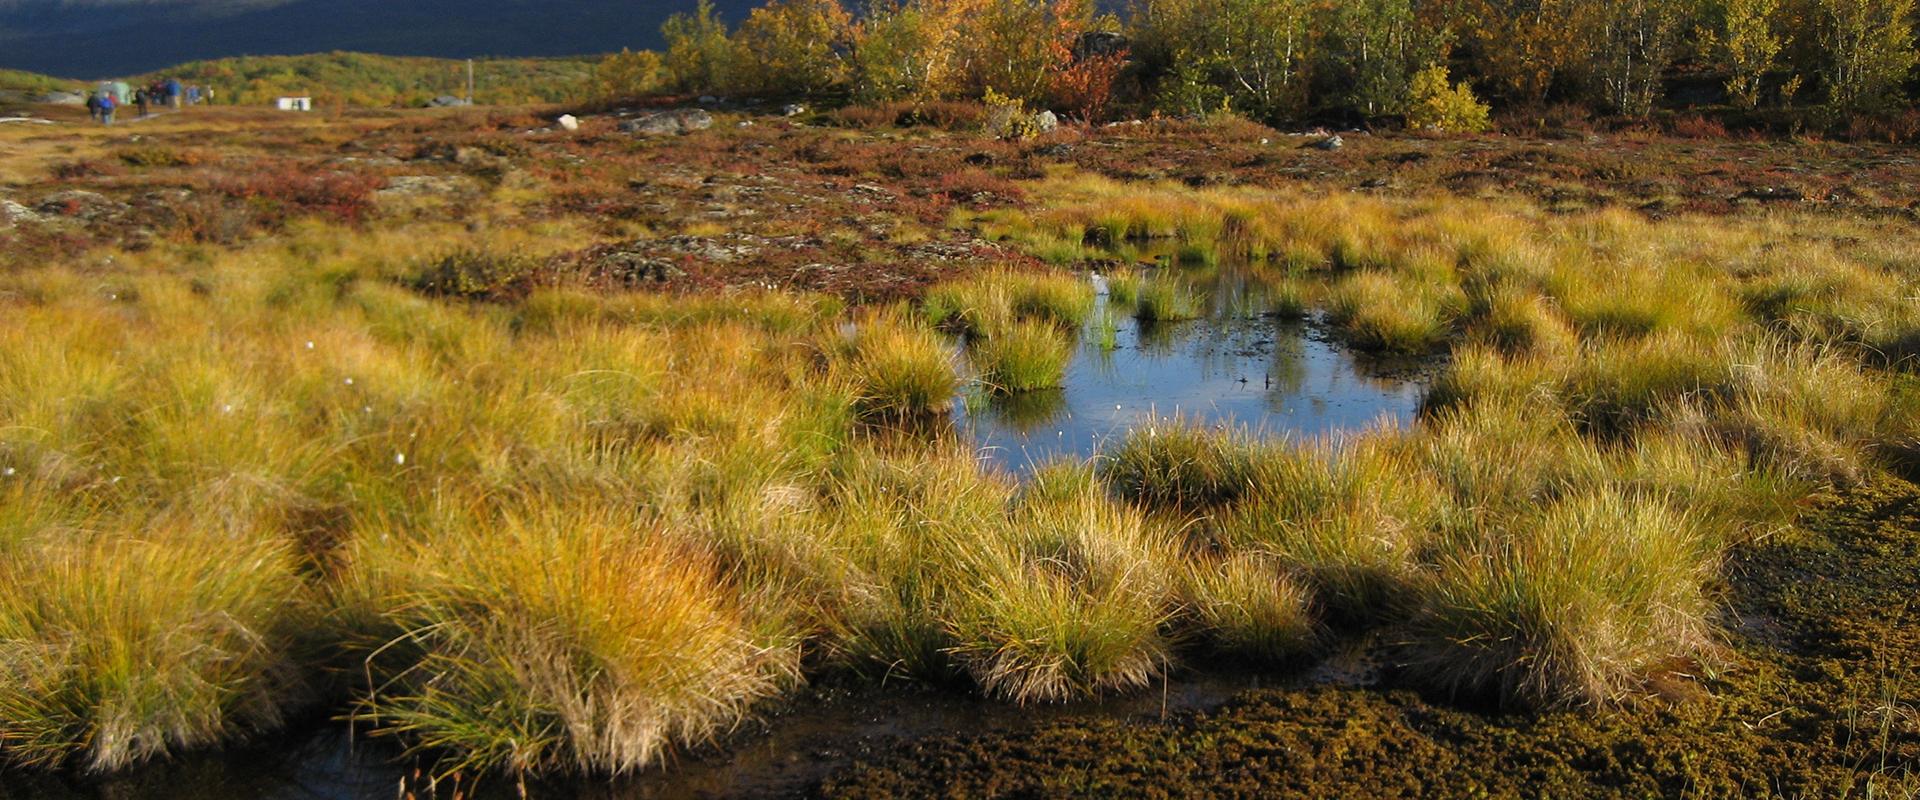 A peat bog in permafrost terrain, Sweden